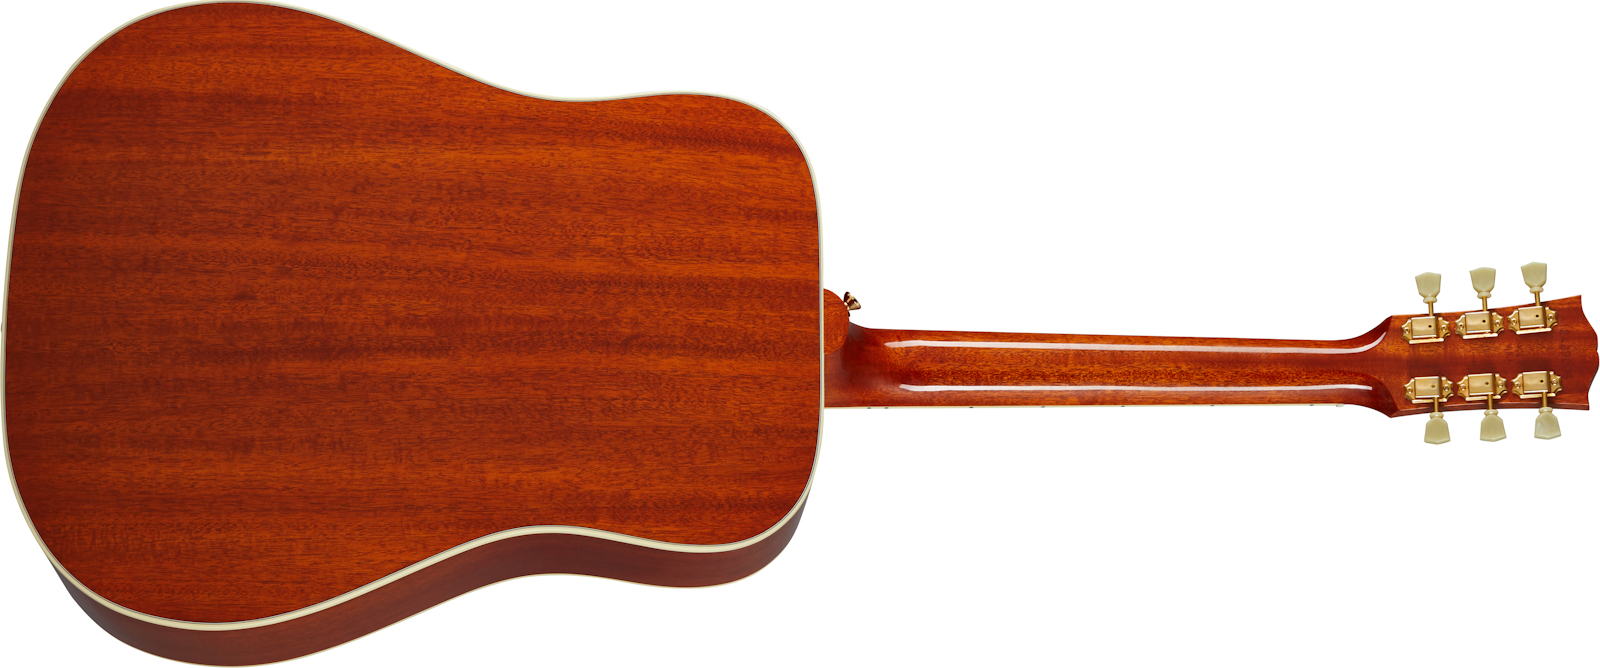 Gibson Hummingbird Original 2020 Dreadnought Epicea Acajou Rw - Heritage Cherry Sunburst - Electro acoustic guitar - Variation 1